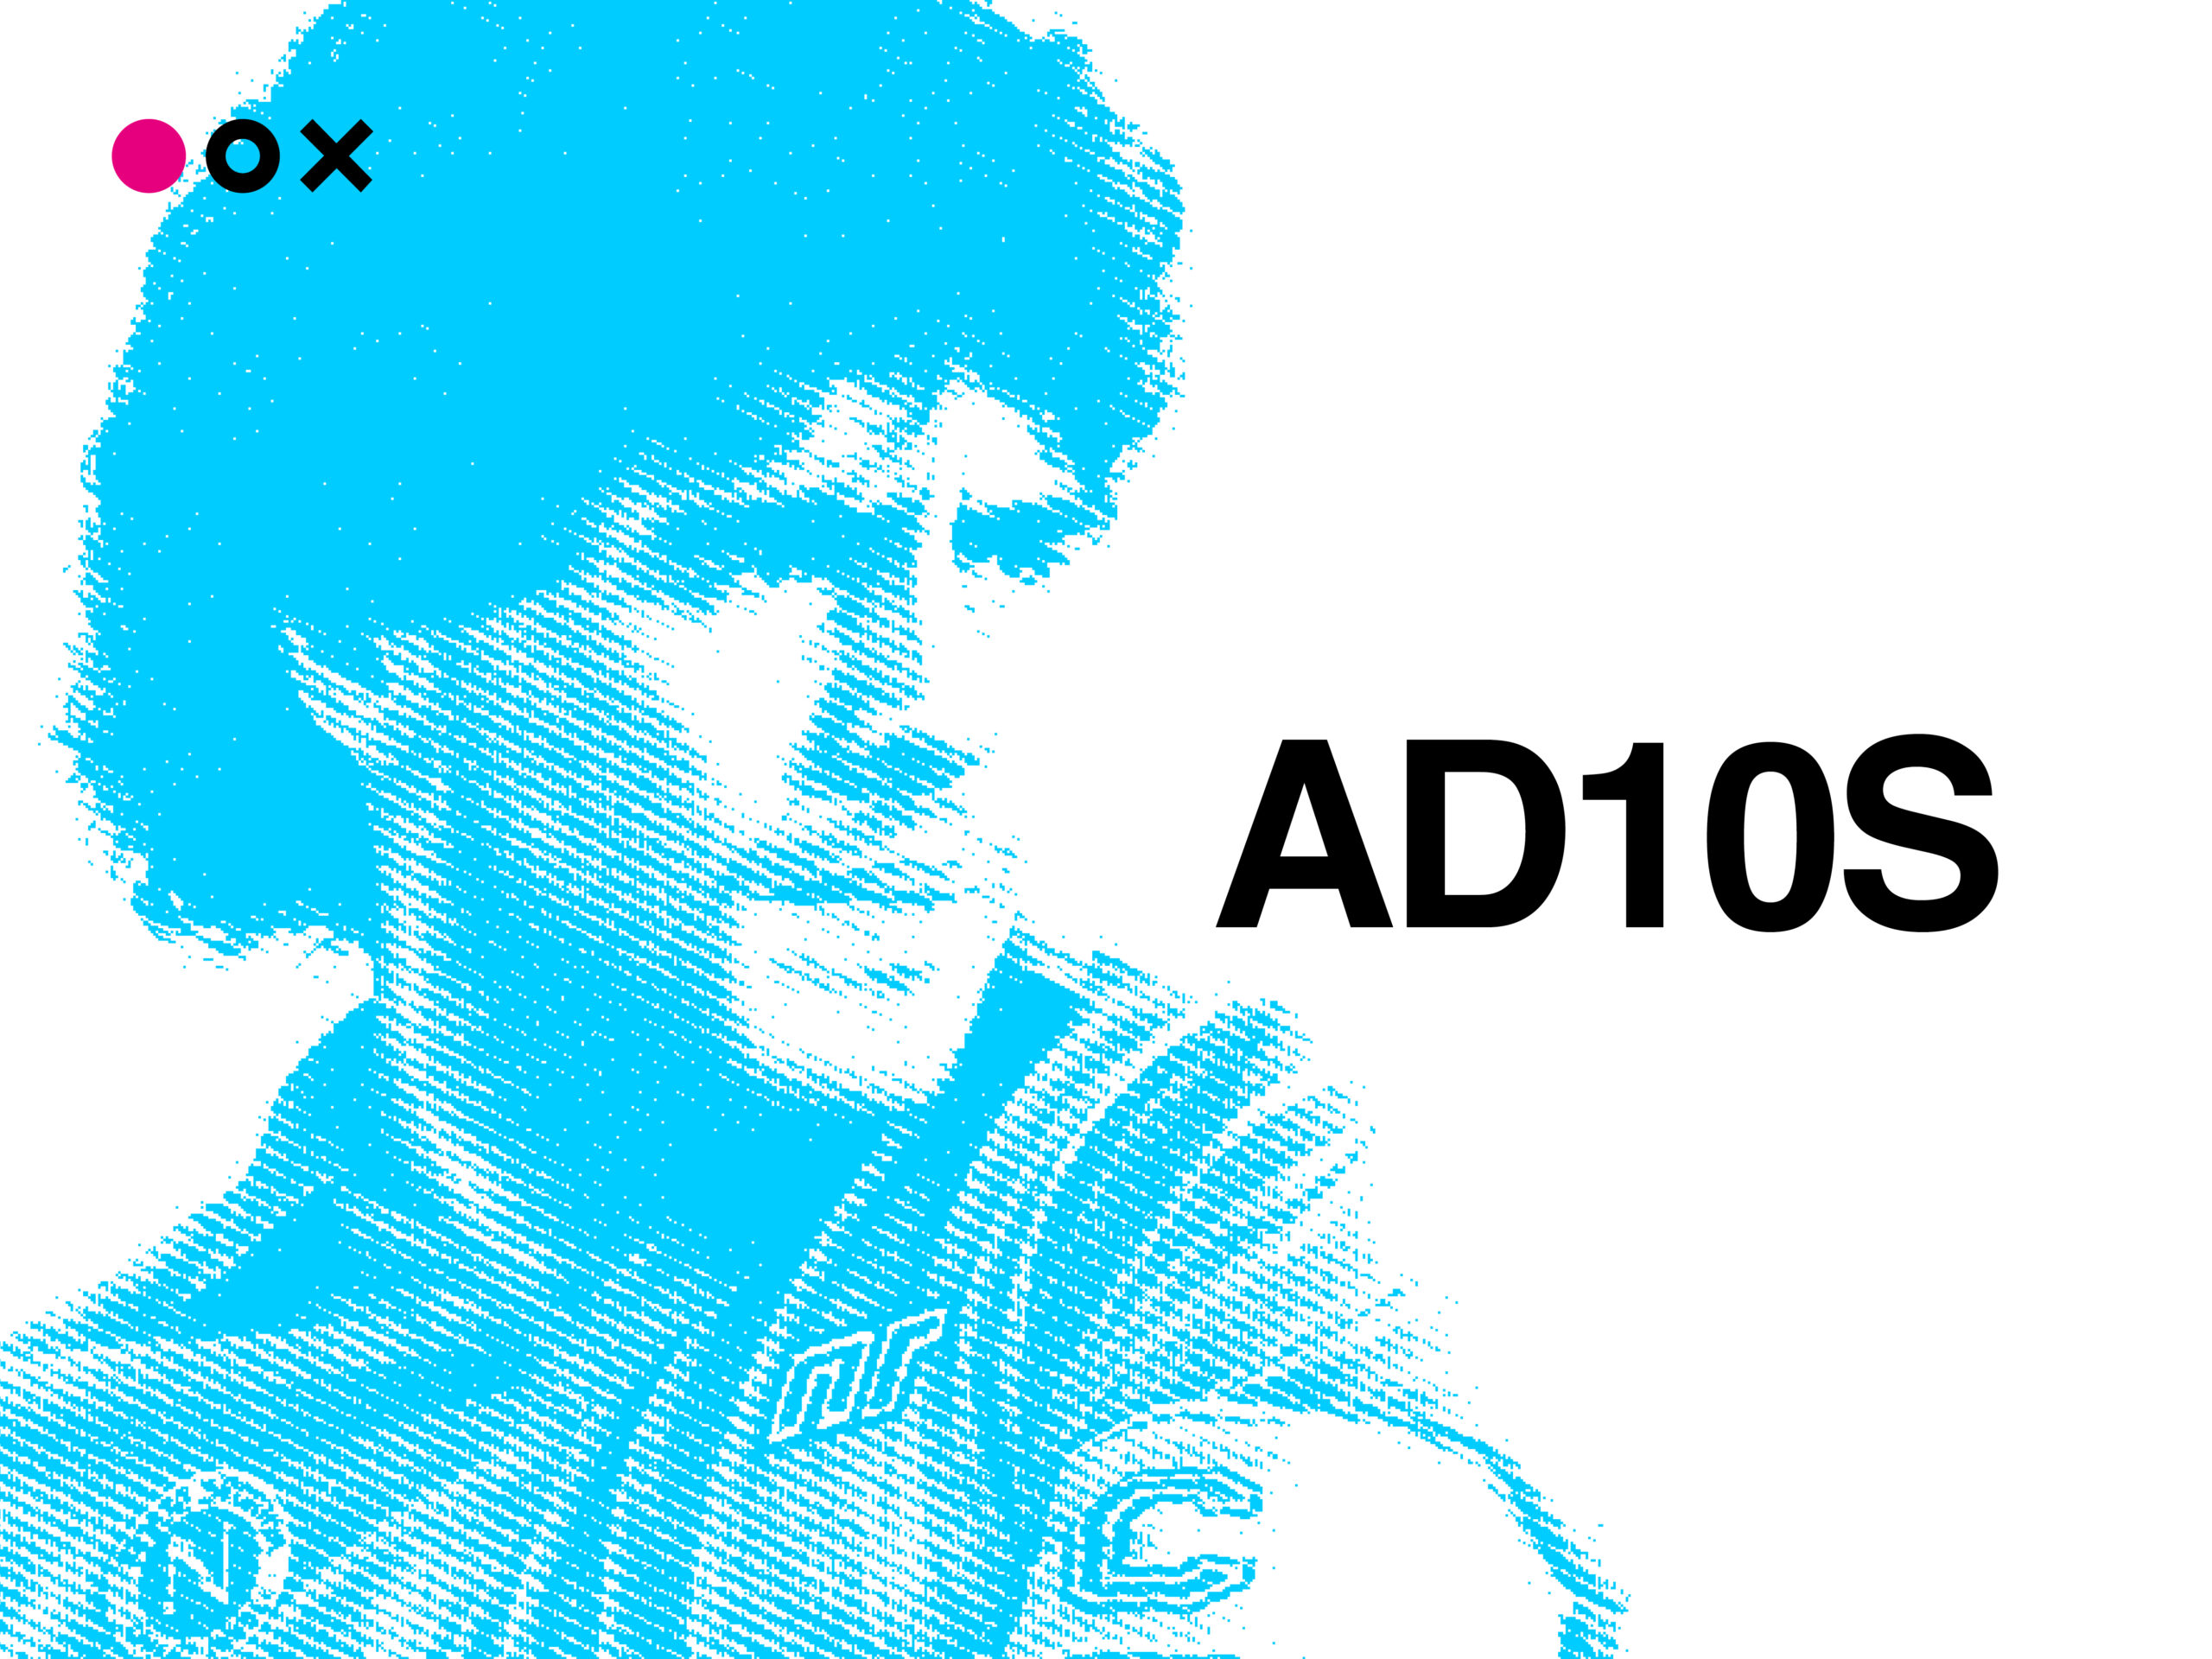 Maradona ad10s by Inedita